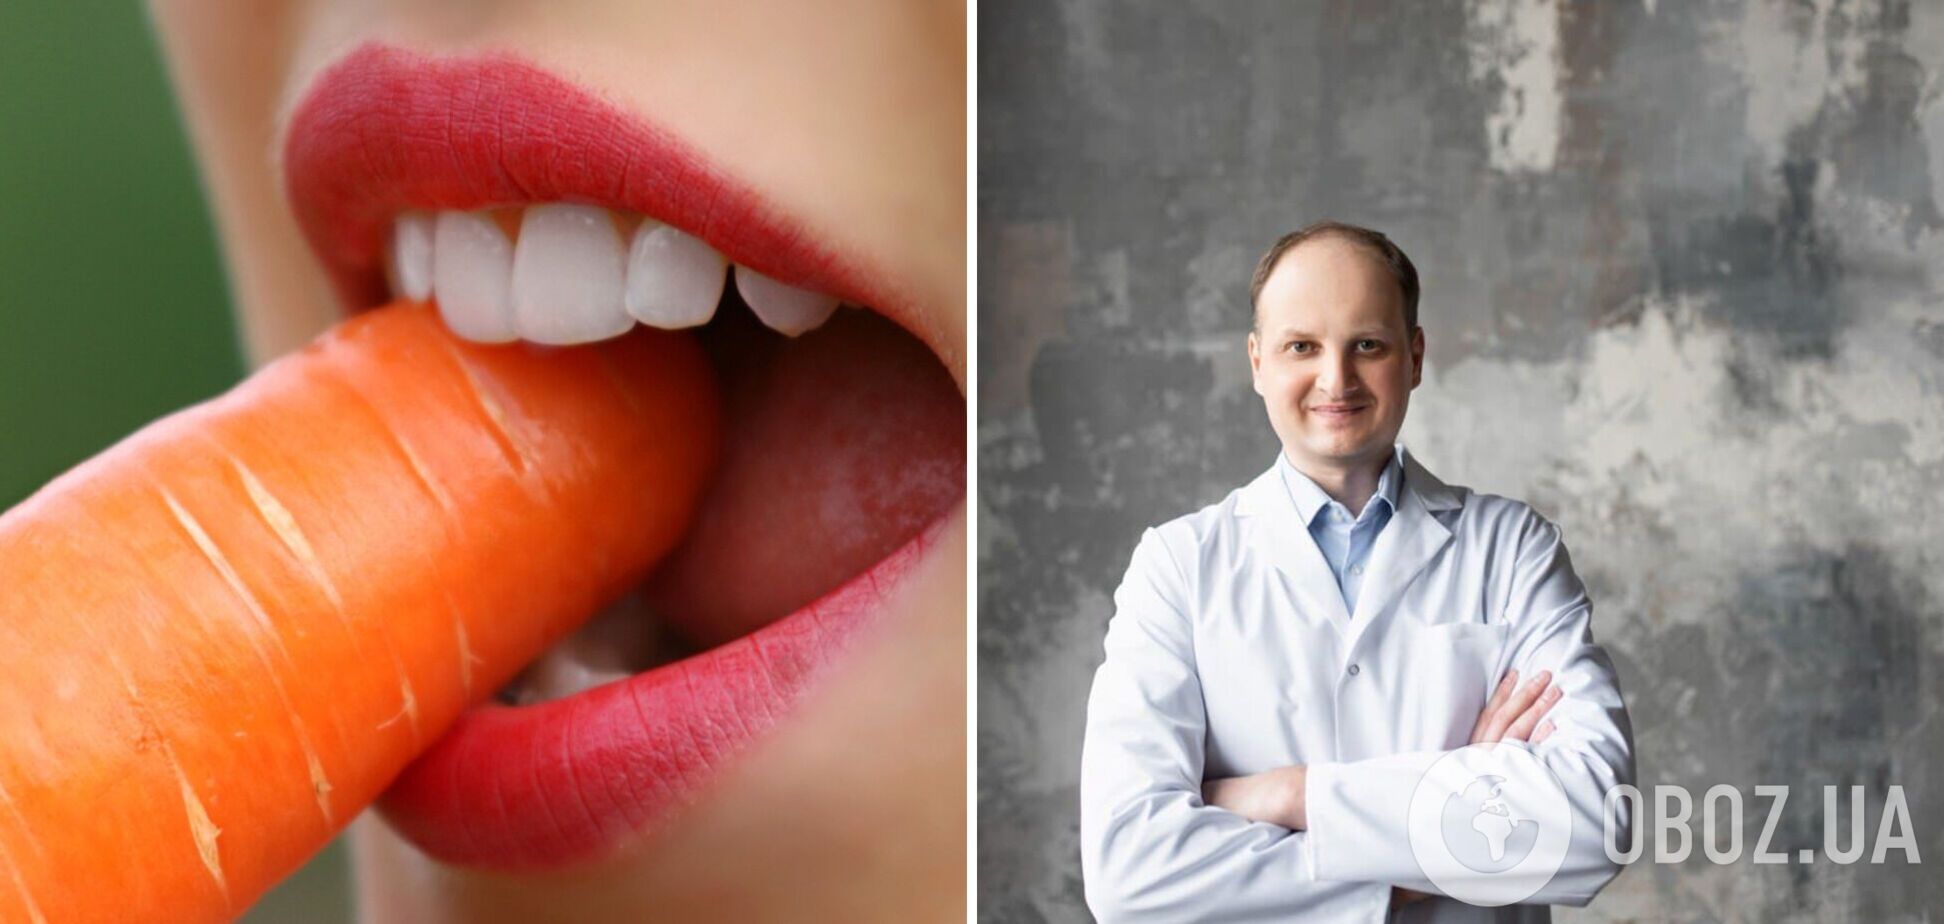 Как ухаживать за полостью рта дома, чтобы иметь здоровые зубы и десна. Рассказывает врач-стоматолог